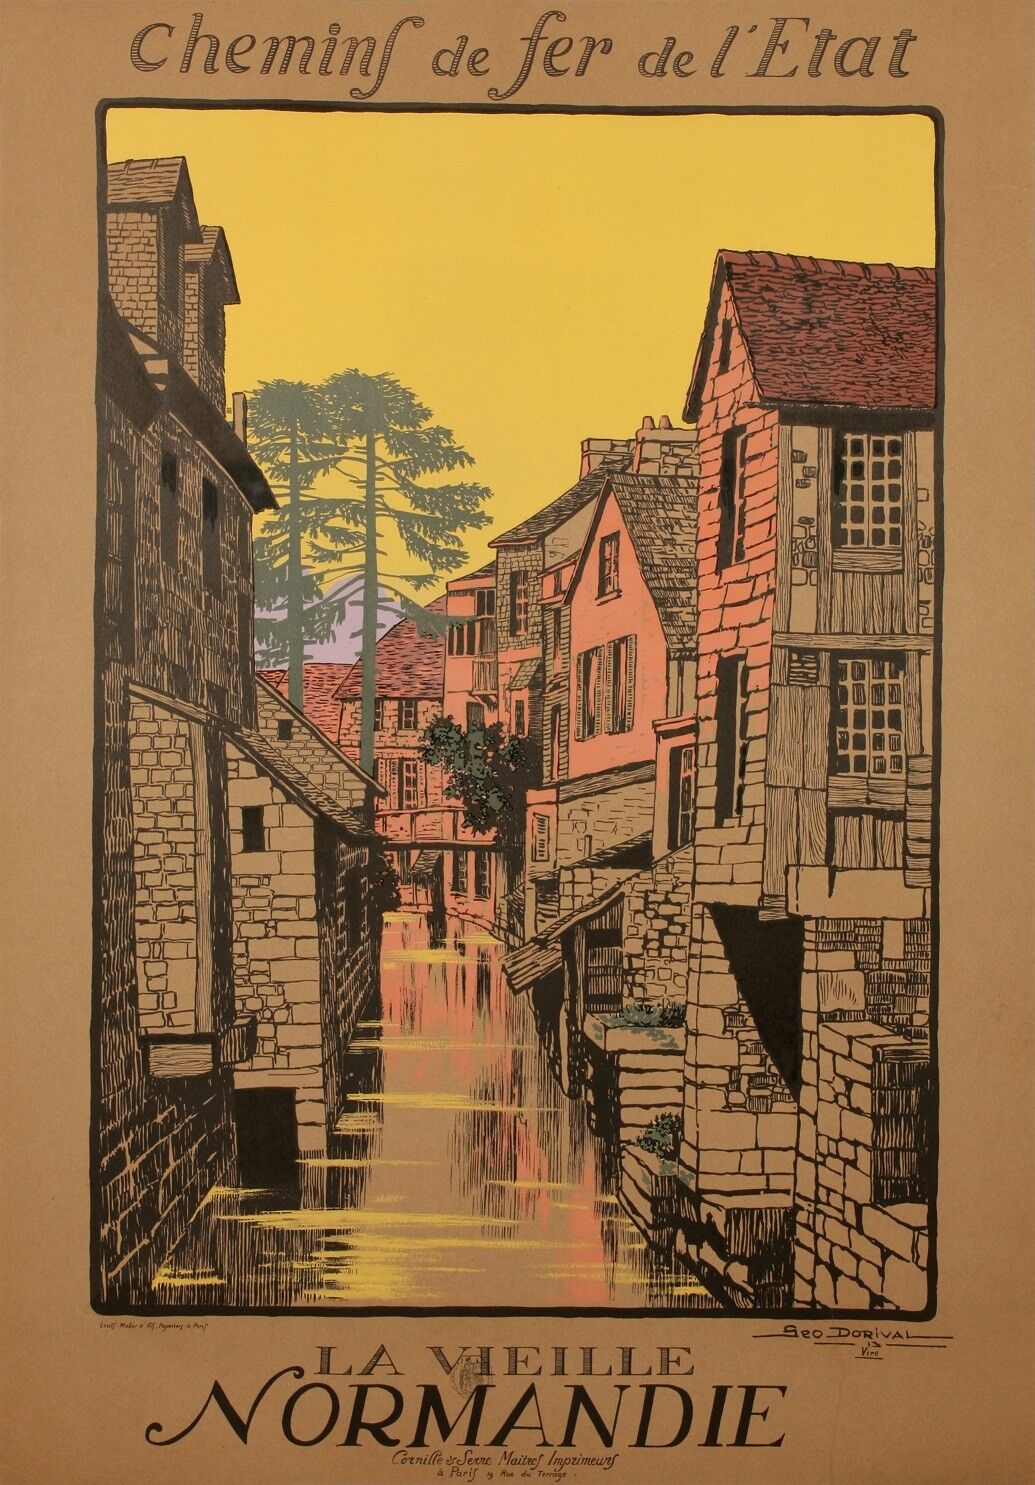 Original tourism poster-geo dorival-vire normandy calvados - 1913